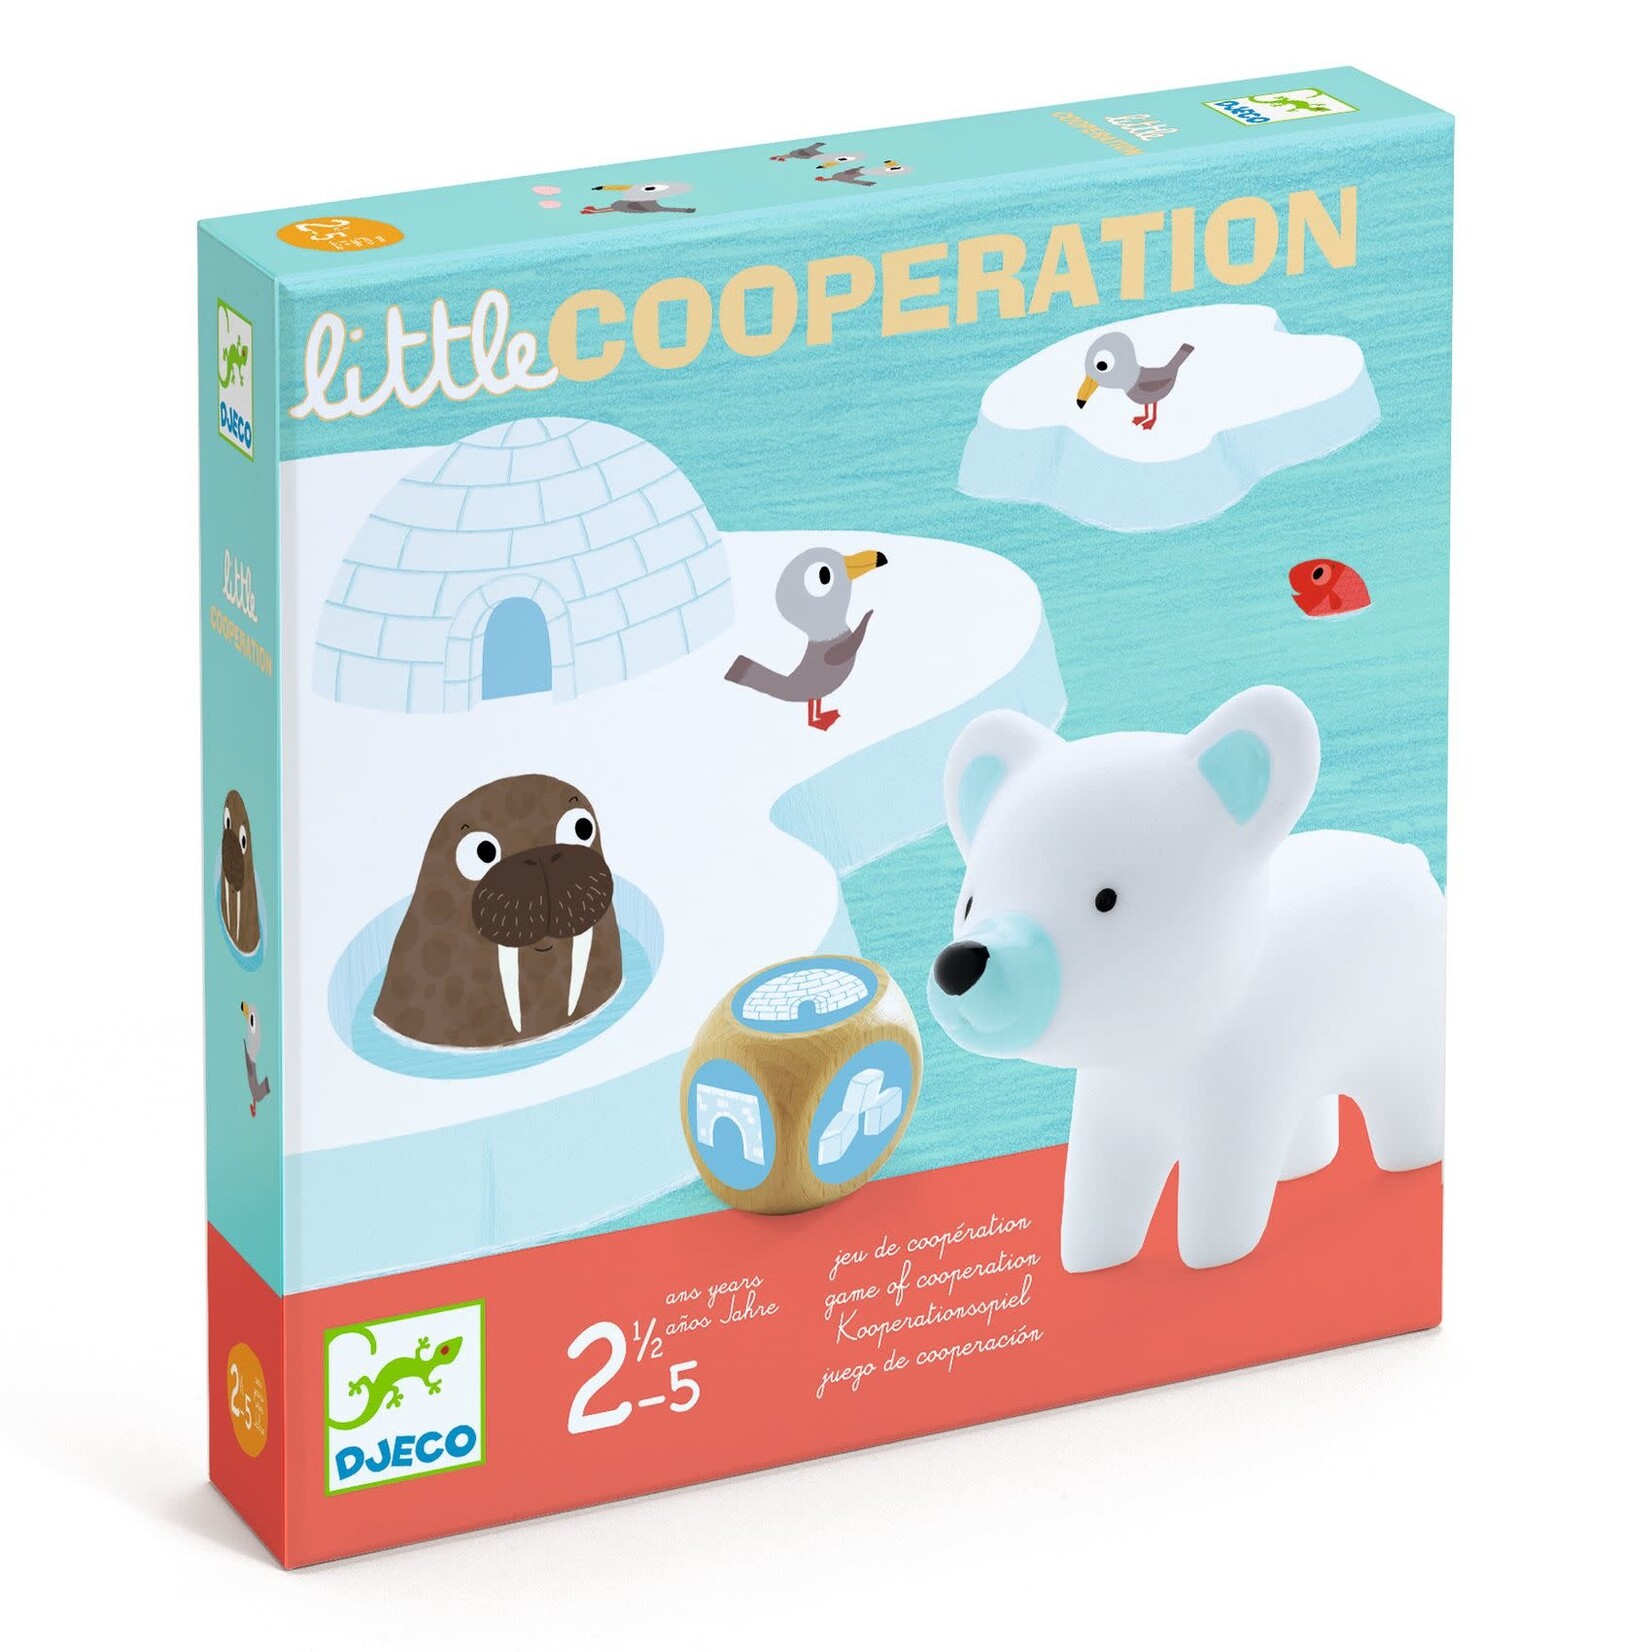 Djeco Djeco - Little Cooperation